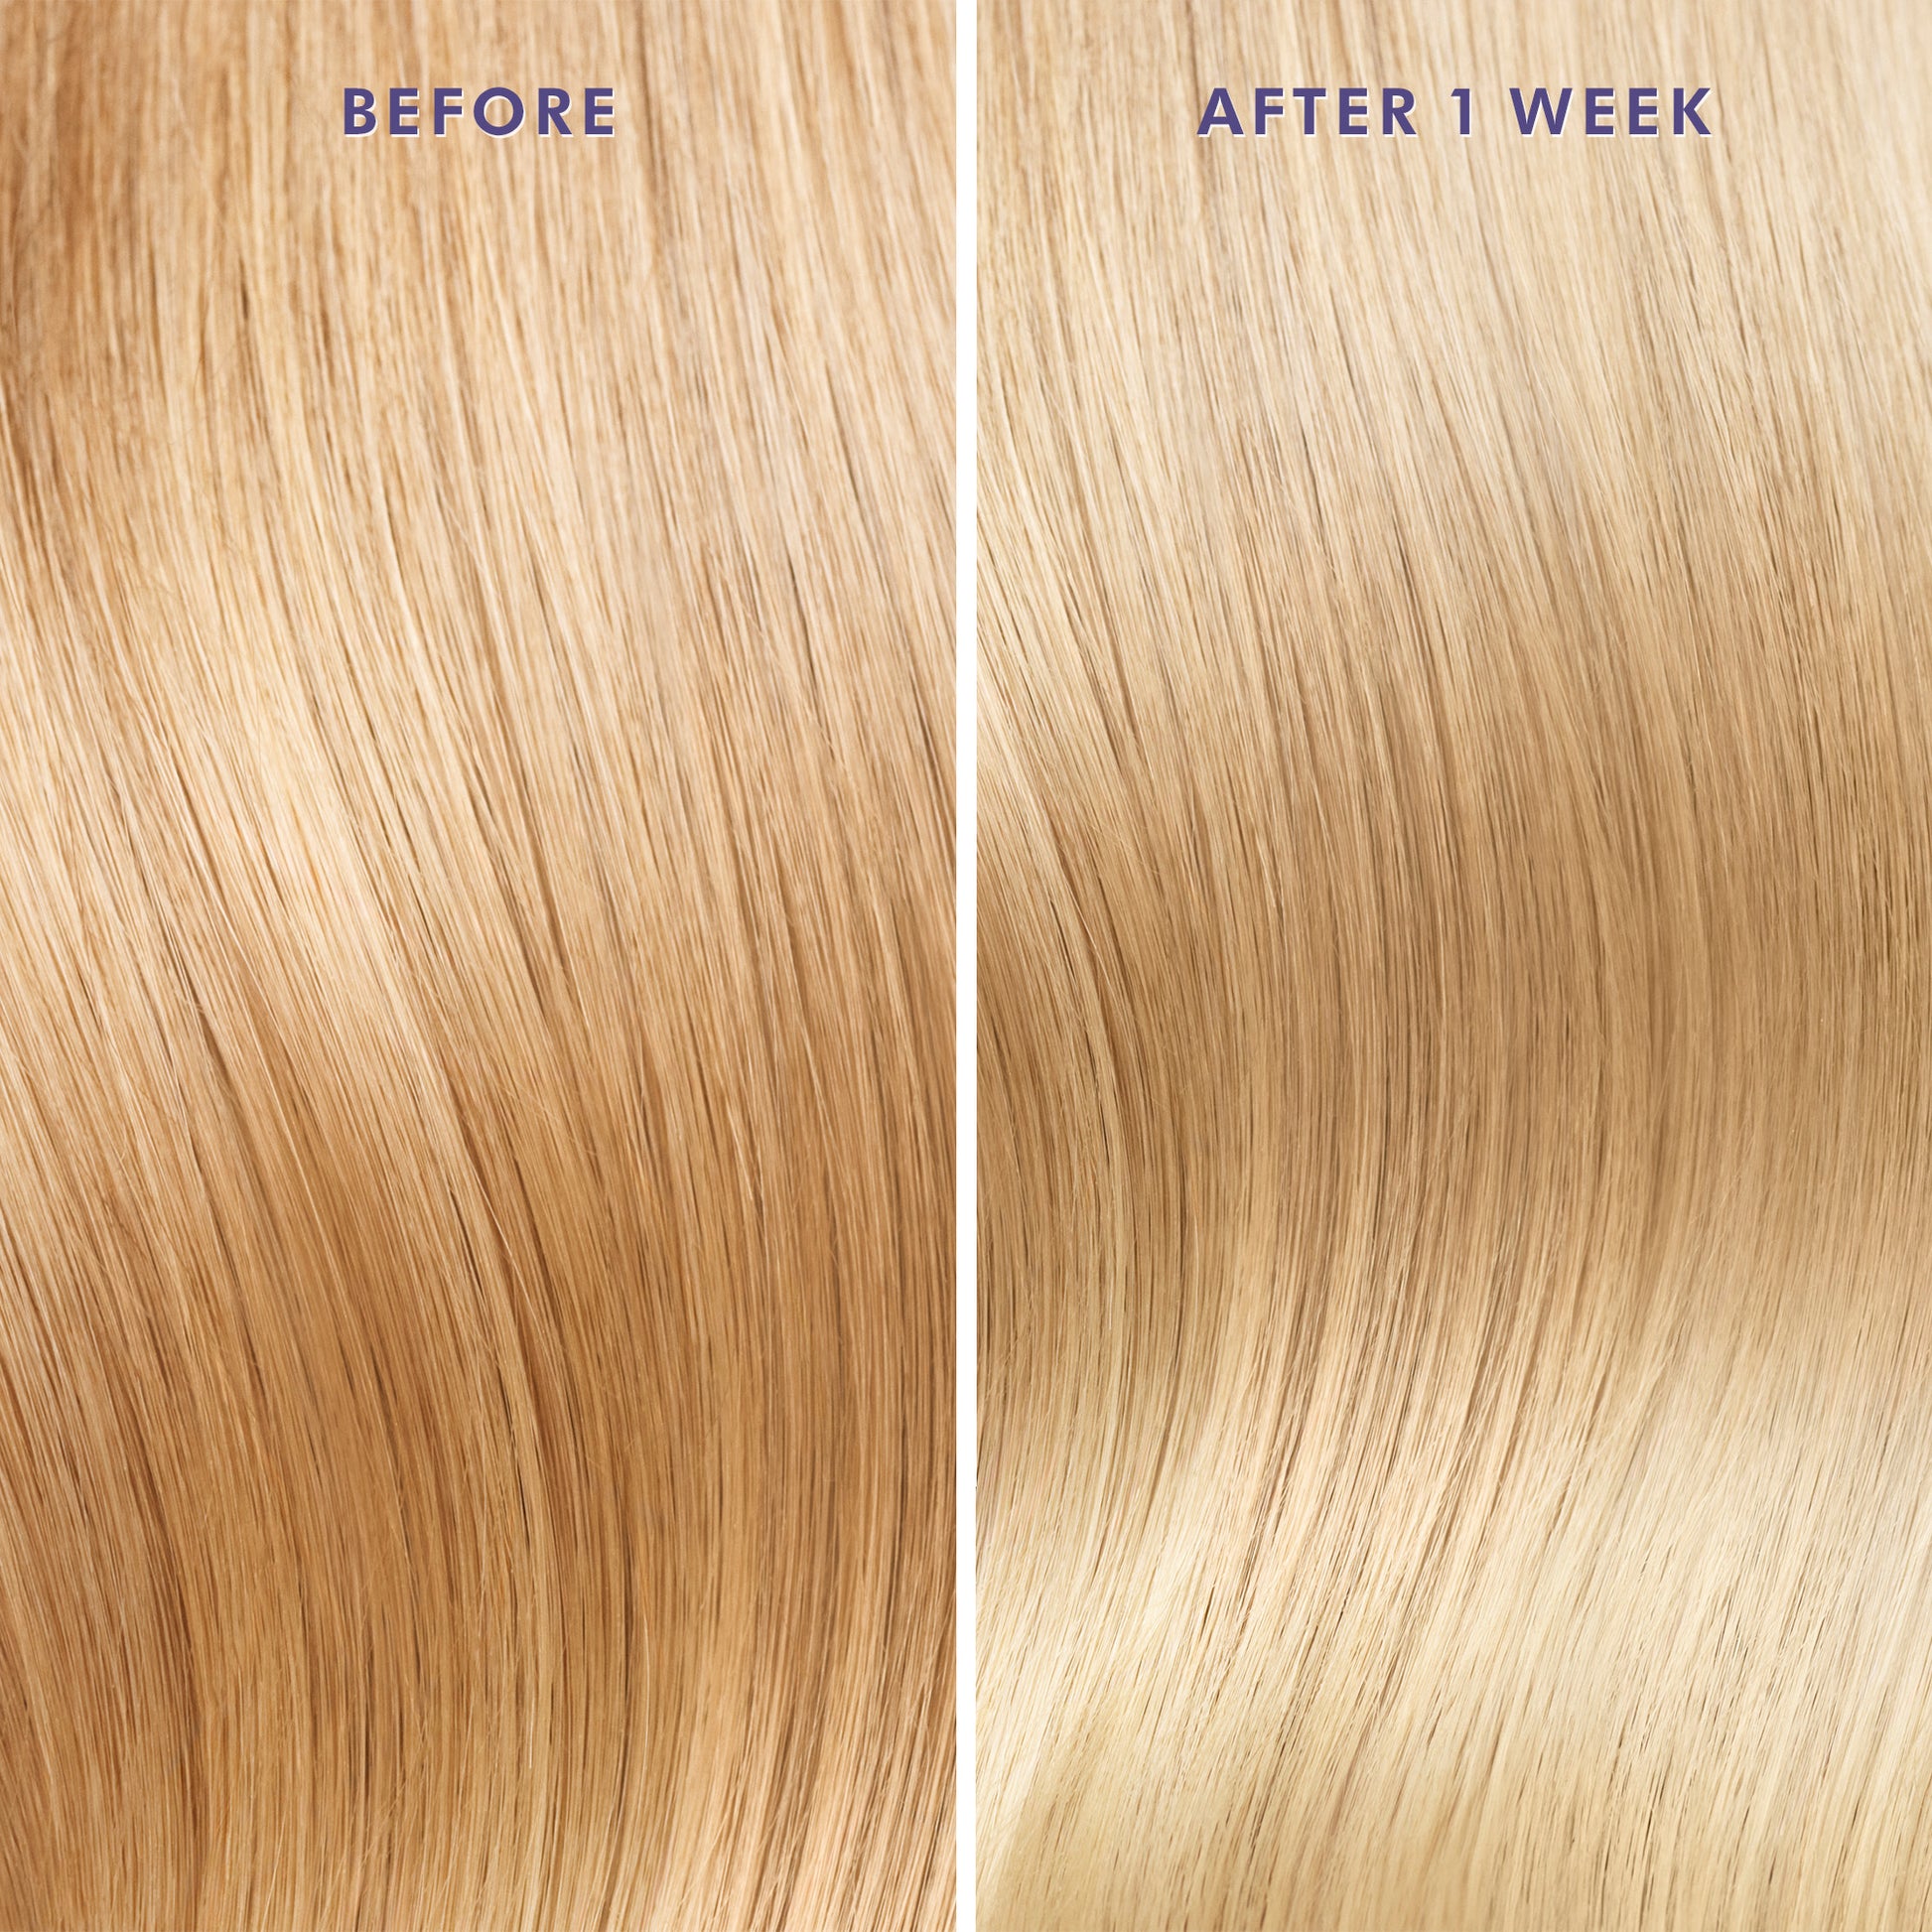 תמונת שיער לפני ואחרי שבוע של שימוש בשמן